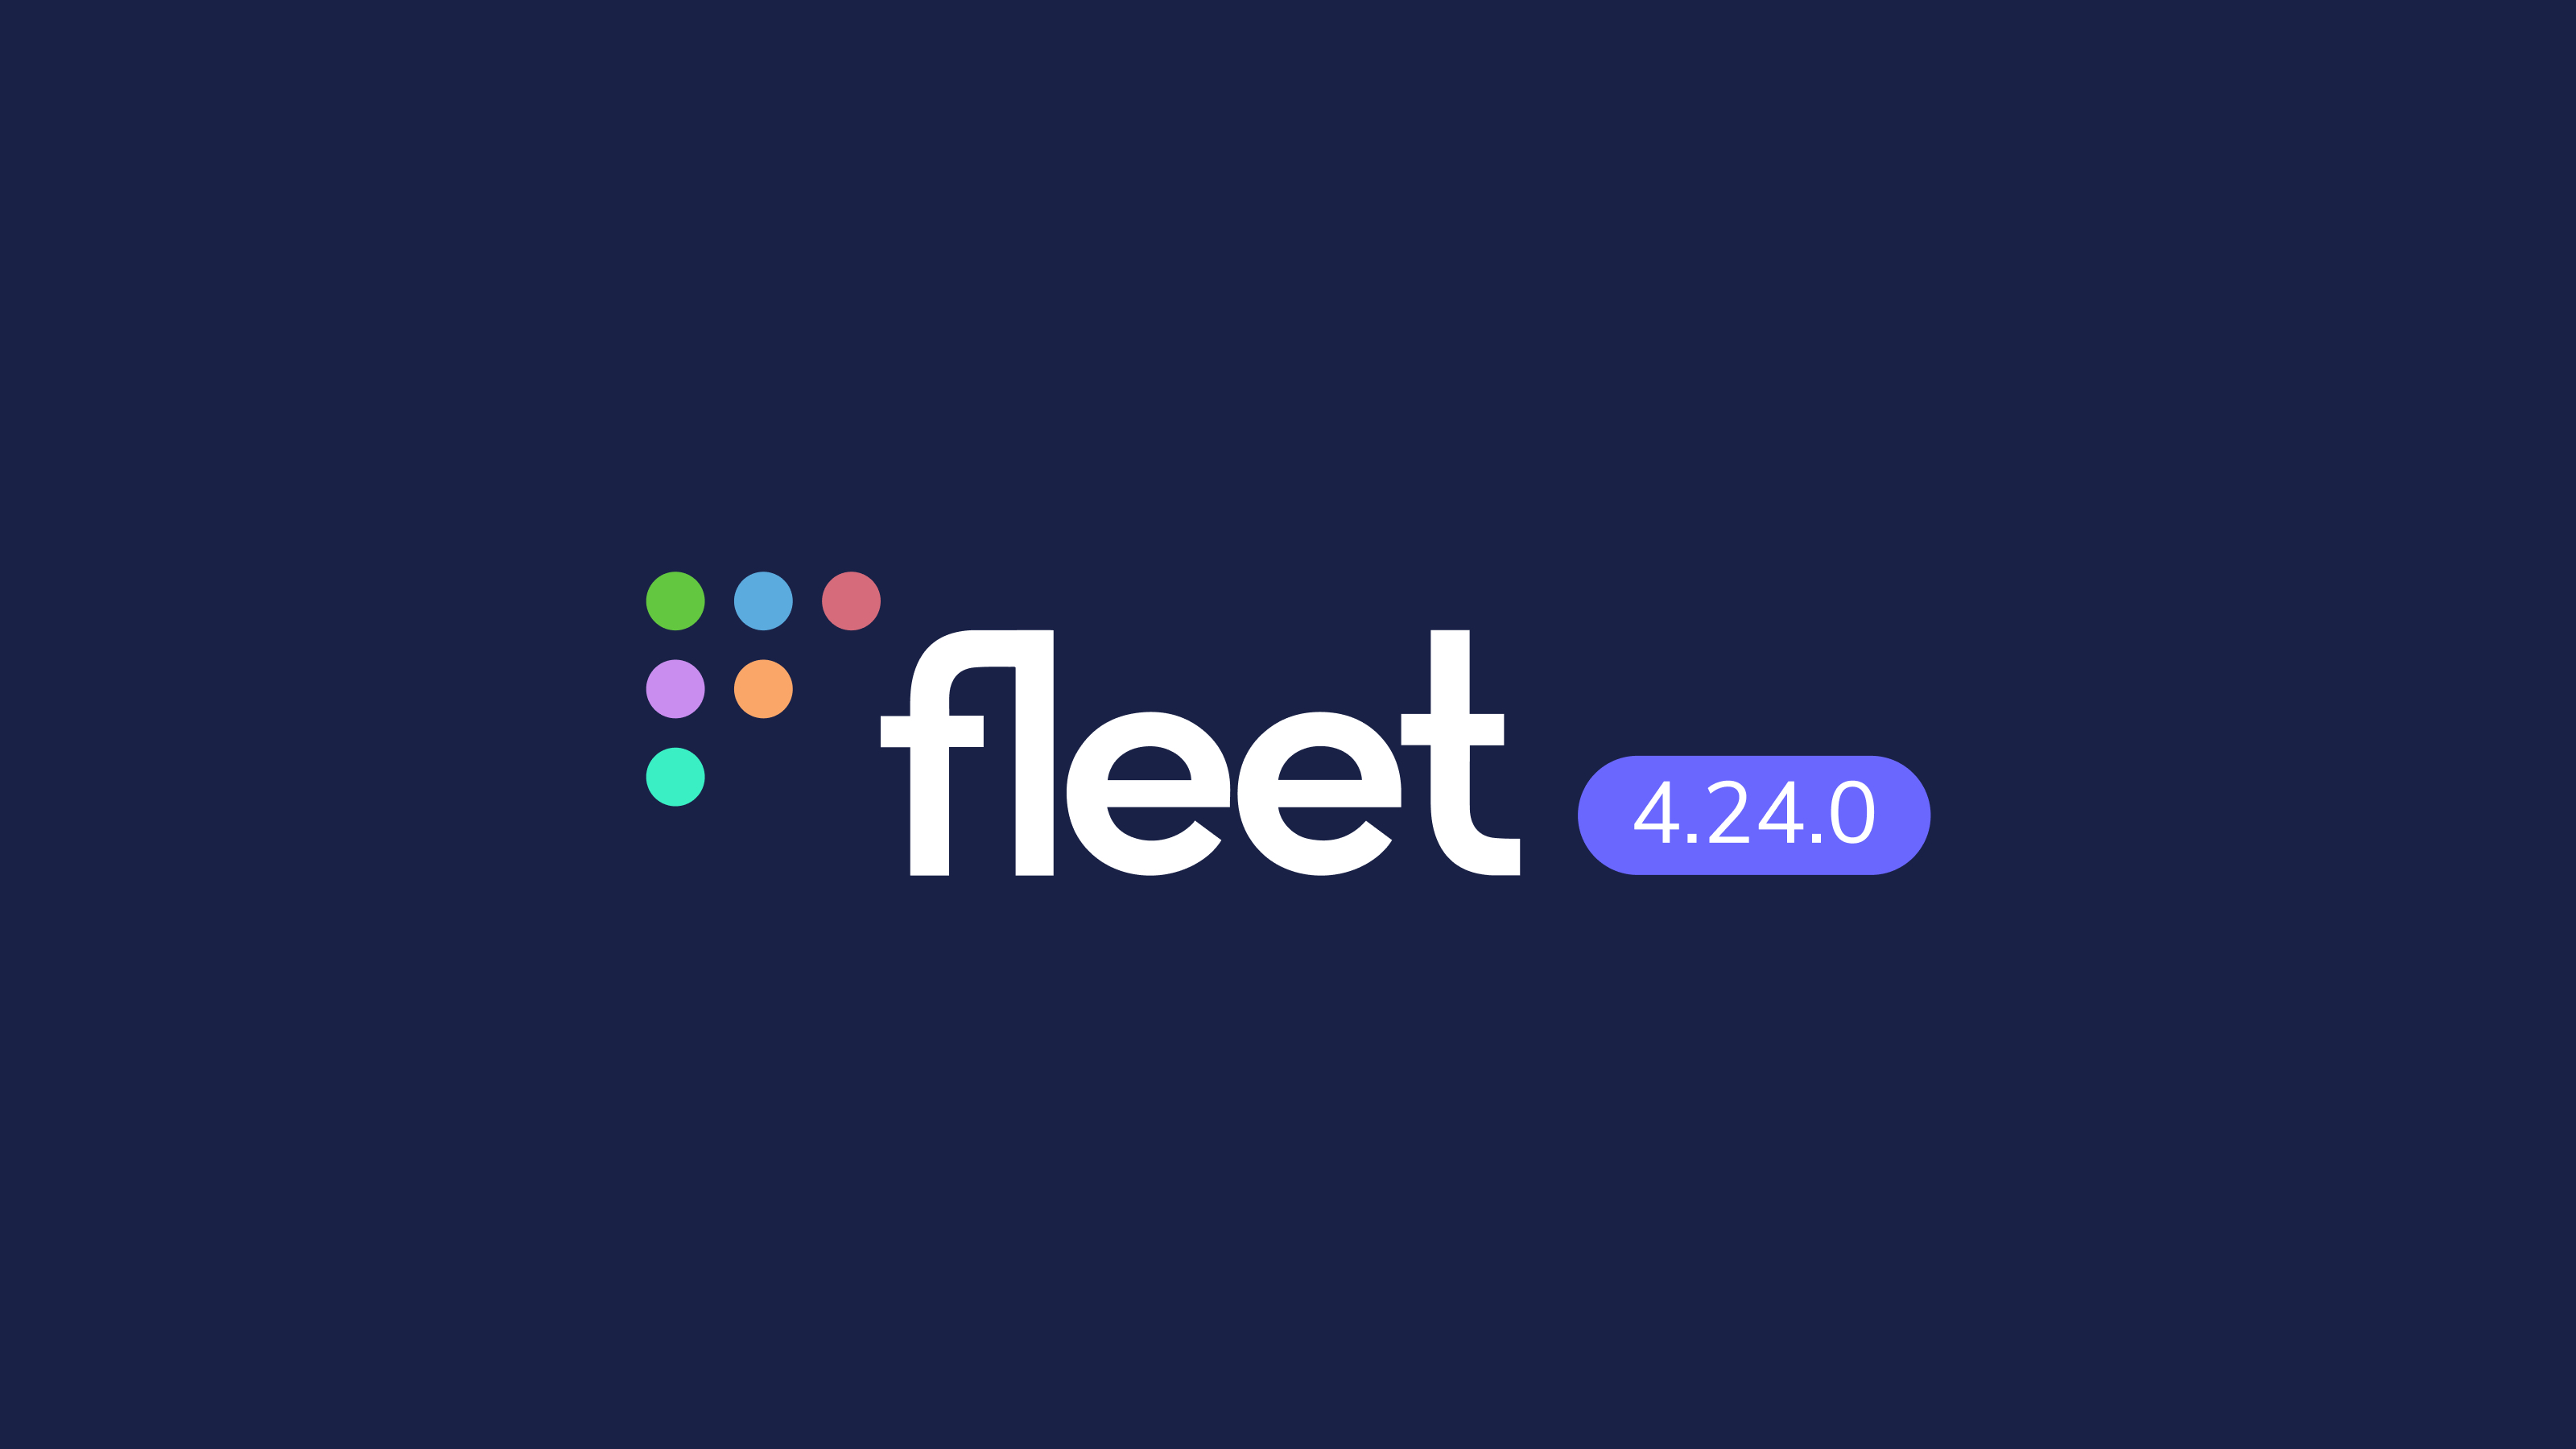 Fleet 4.24.0